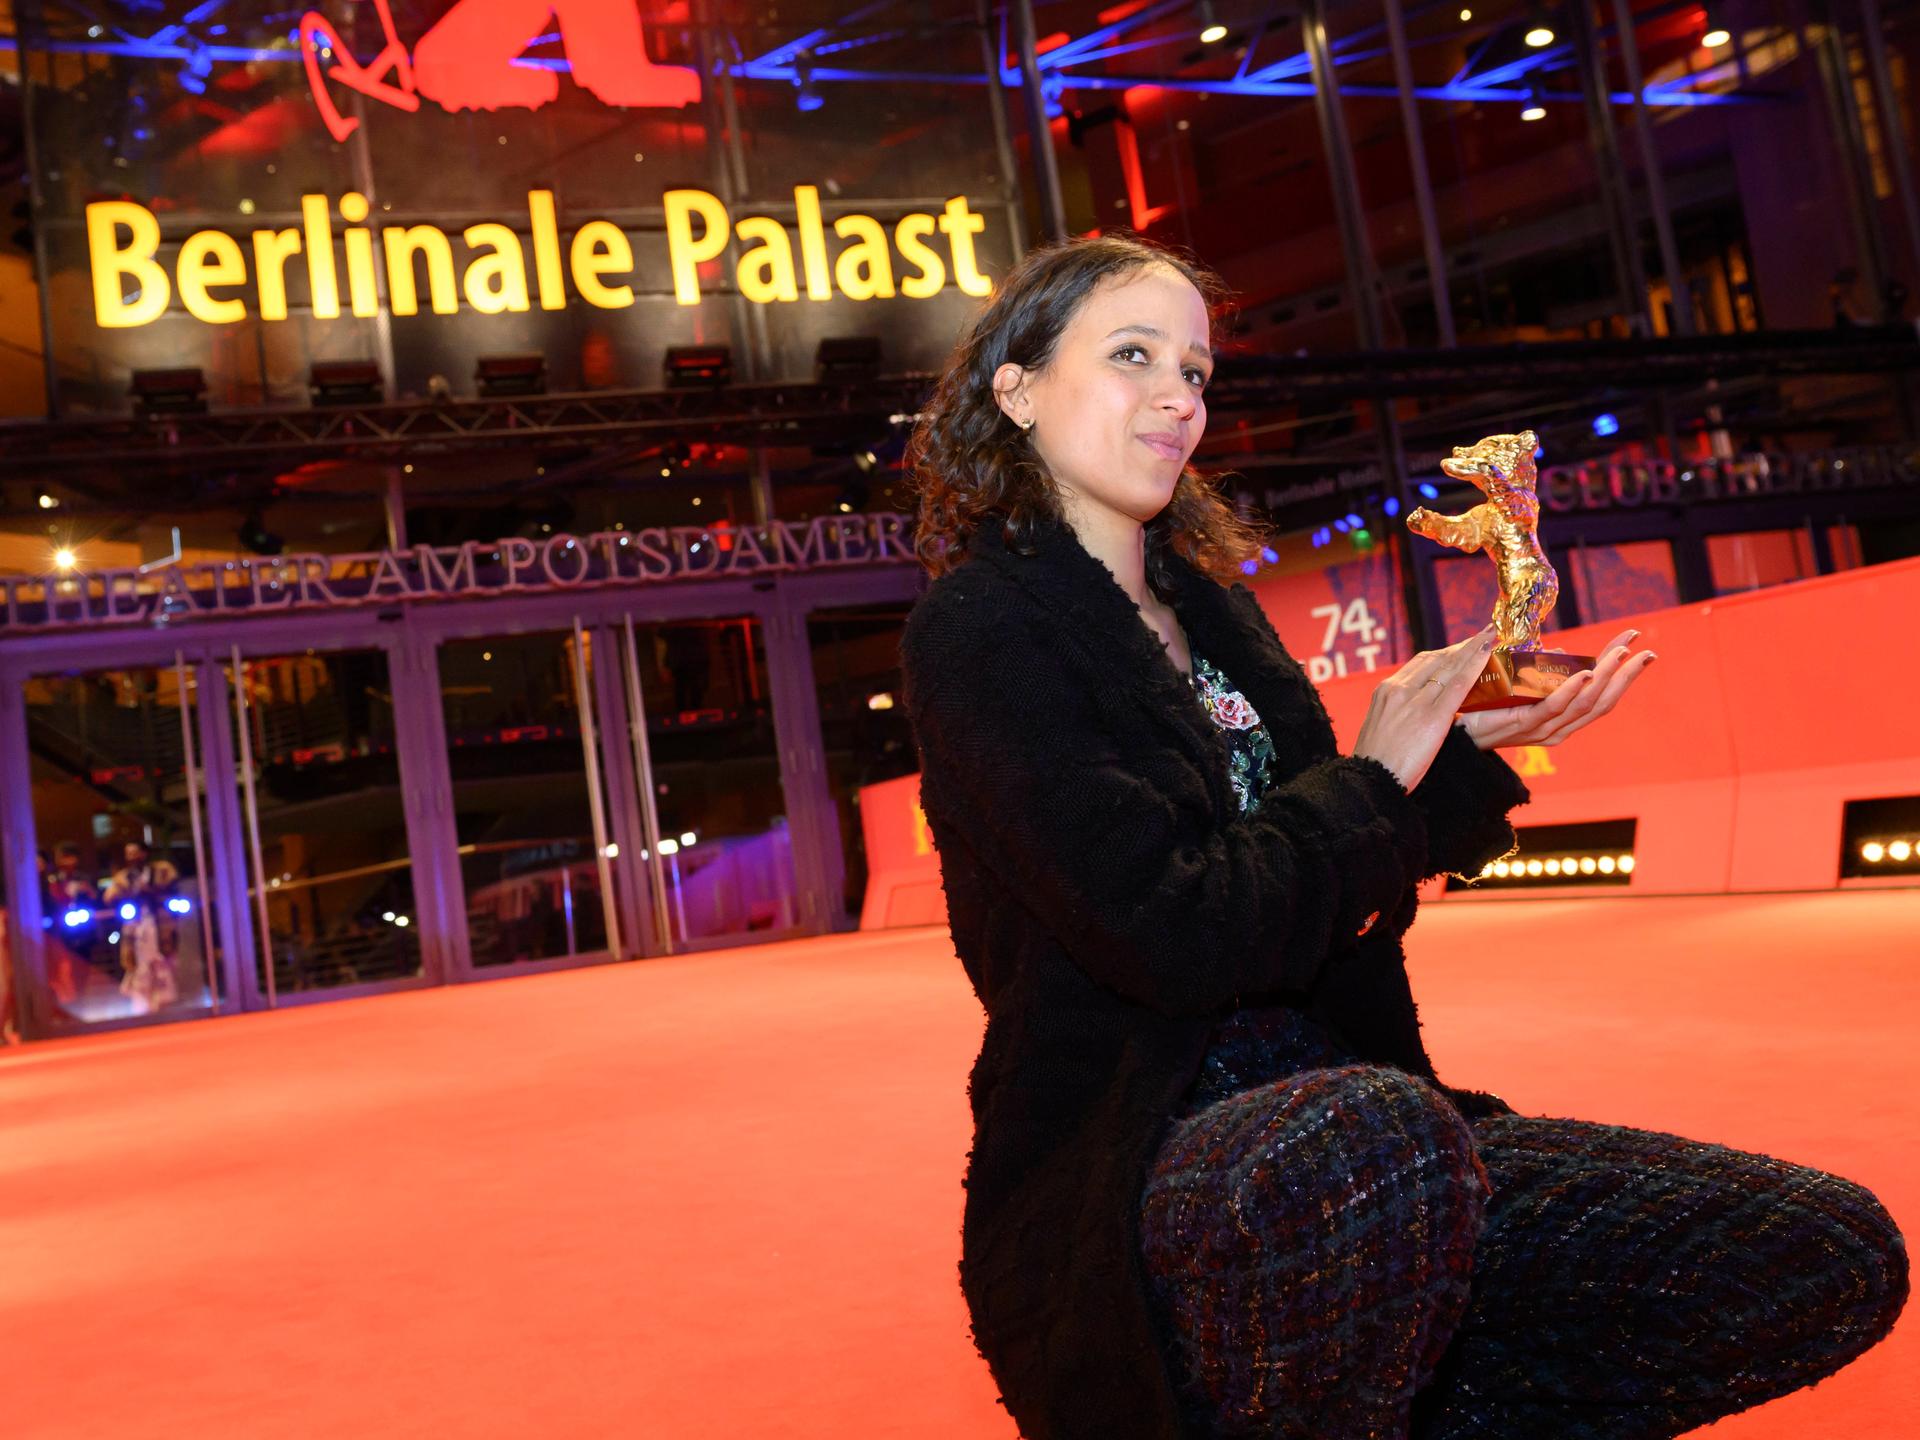 Mati Diop kniet stolz auf dem Roten Teppich vor dem Berlinale-Palast und präsentiert ihren Goldenen Bären, eine handliche Skulptur eines Bären. 